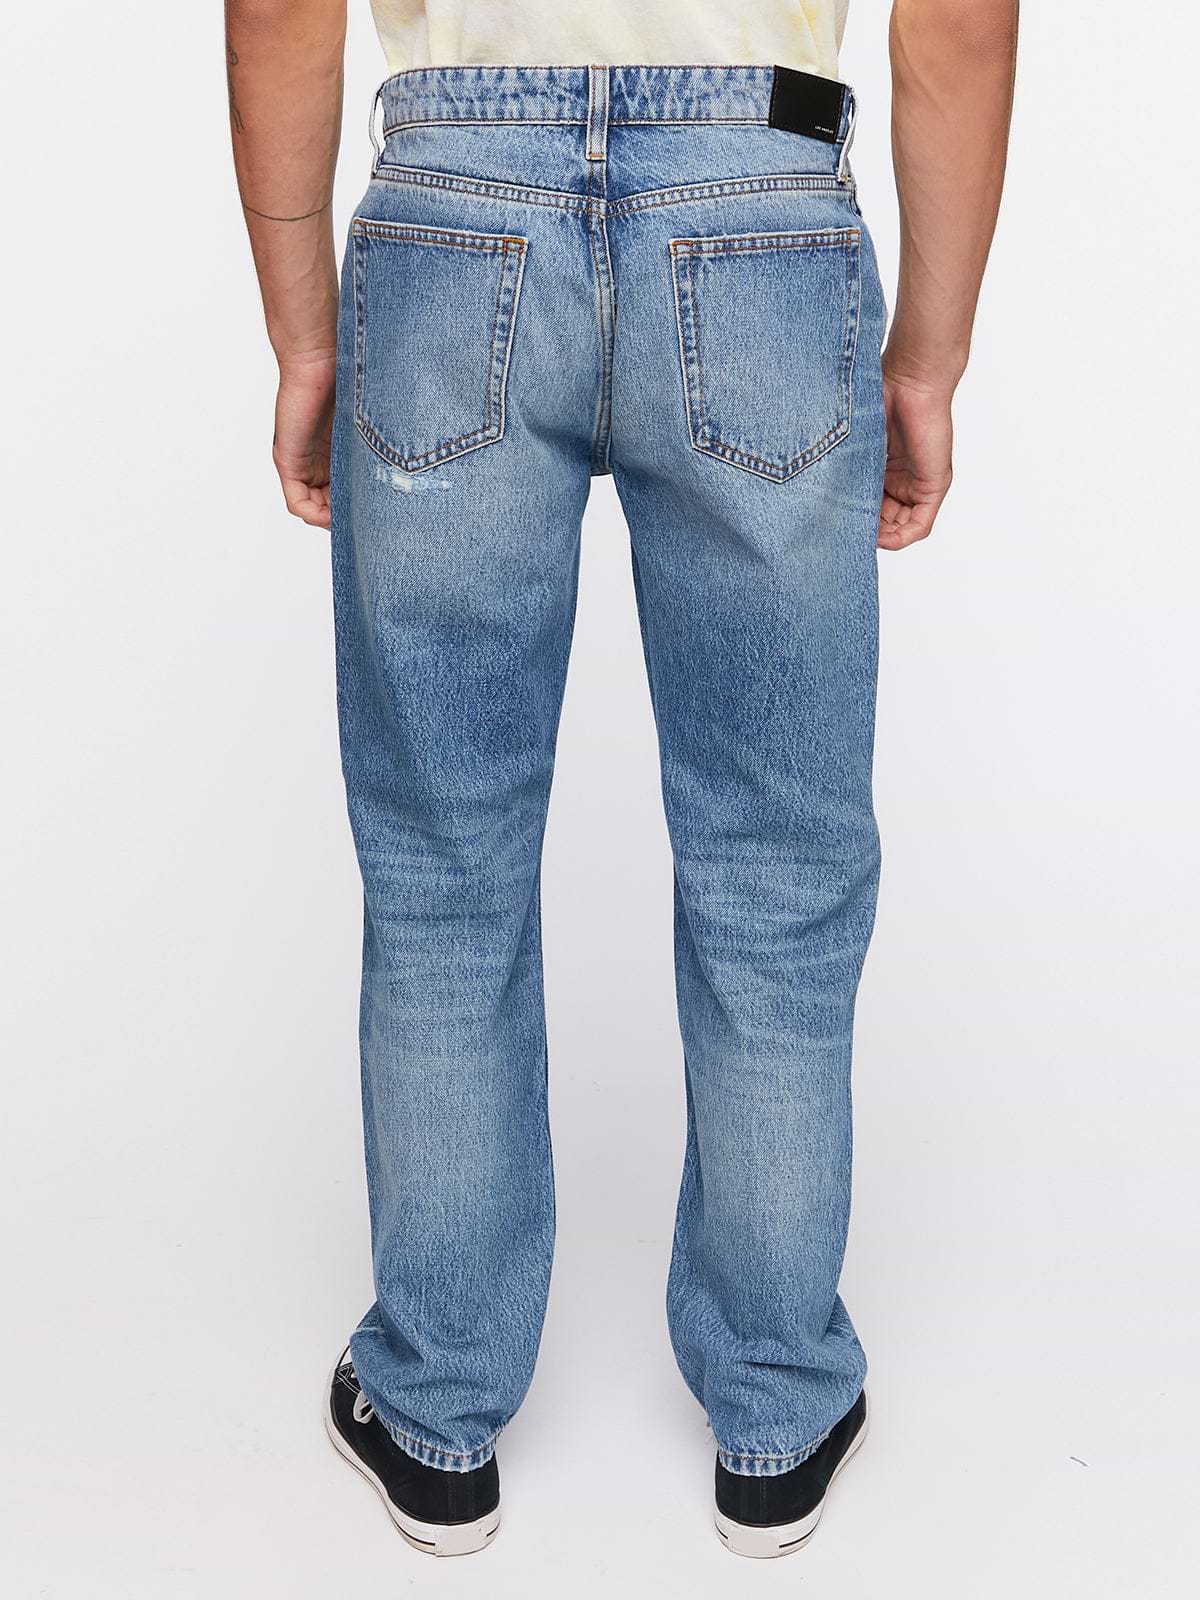 מכנסי ג'ינס עם שפשופים